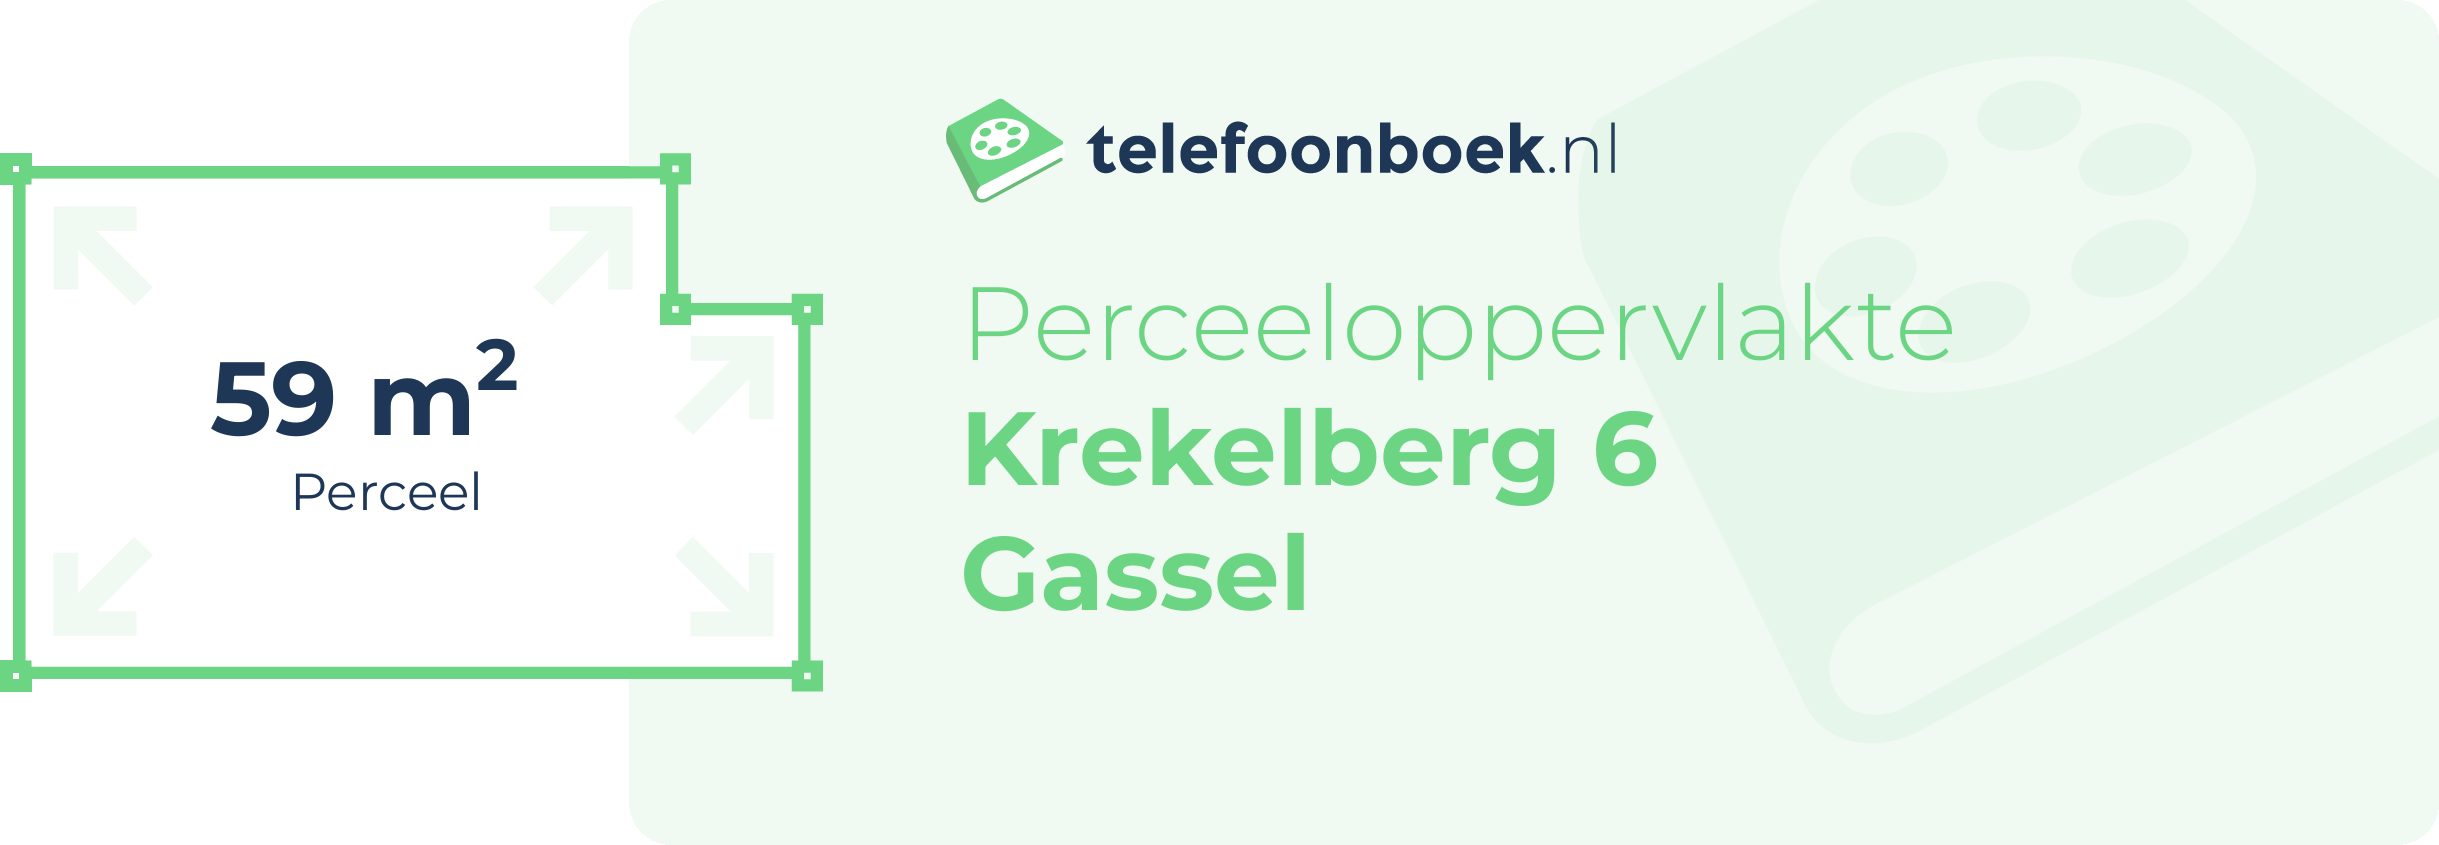 Perceeloppervlakte Krekelberg 6 Gassel